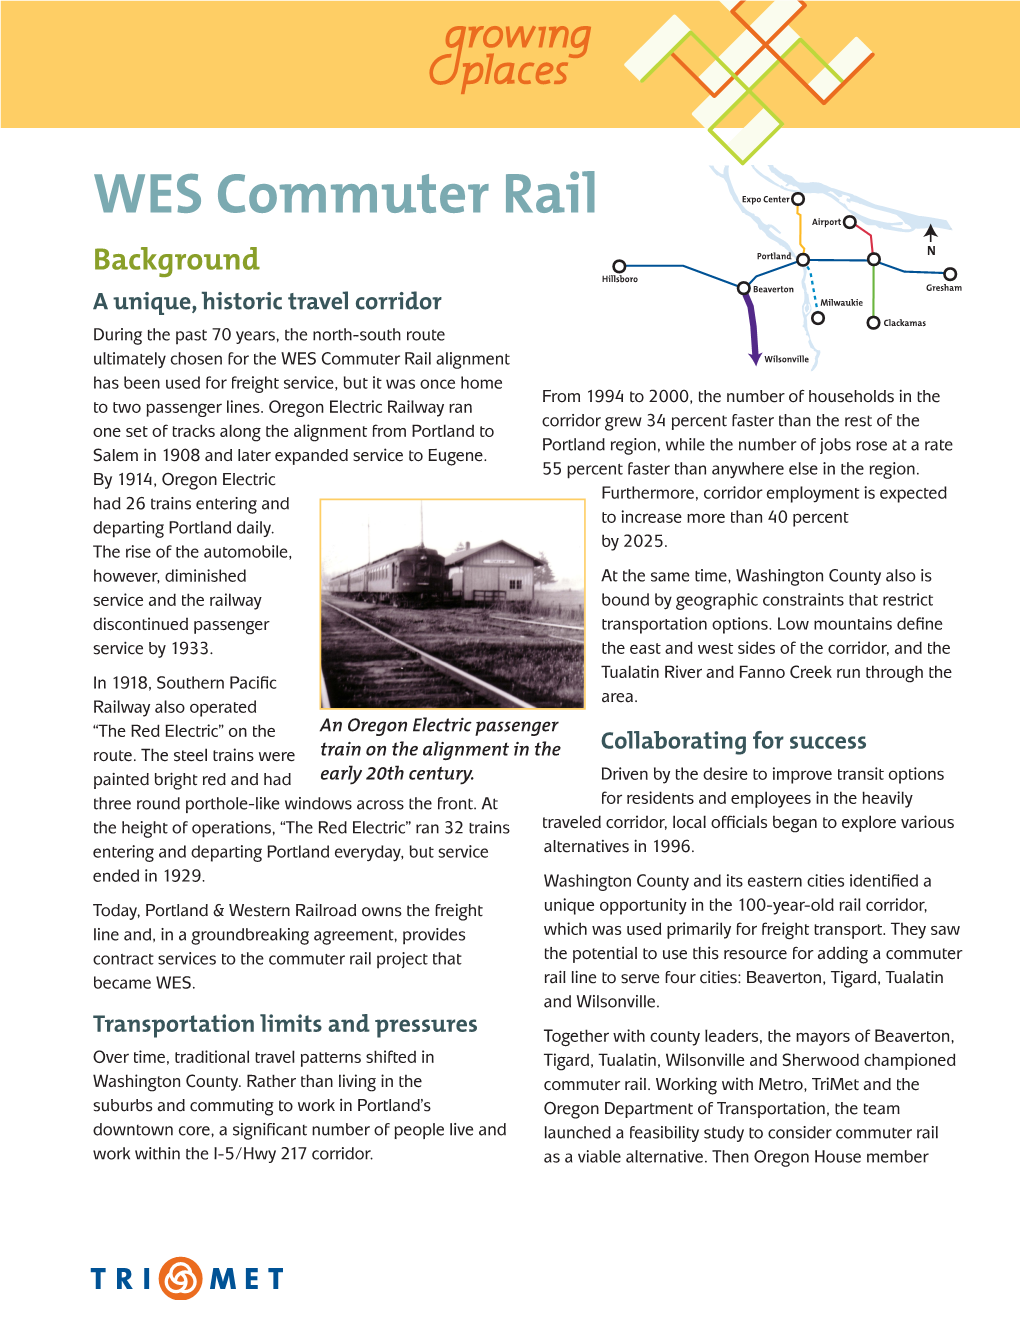 WES Commuter Rail Fact Sheet